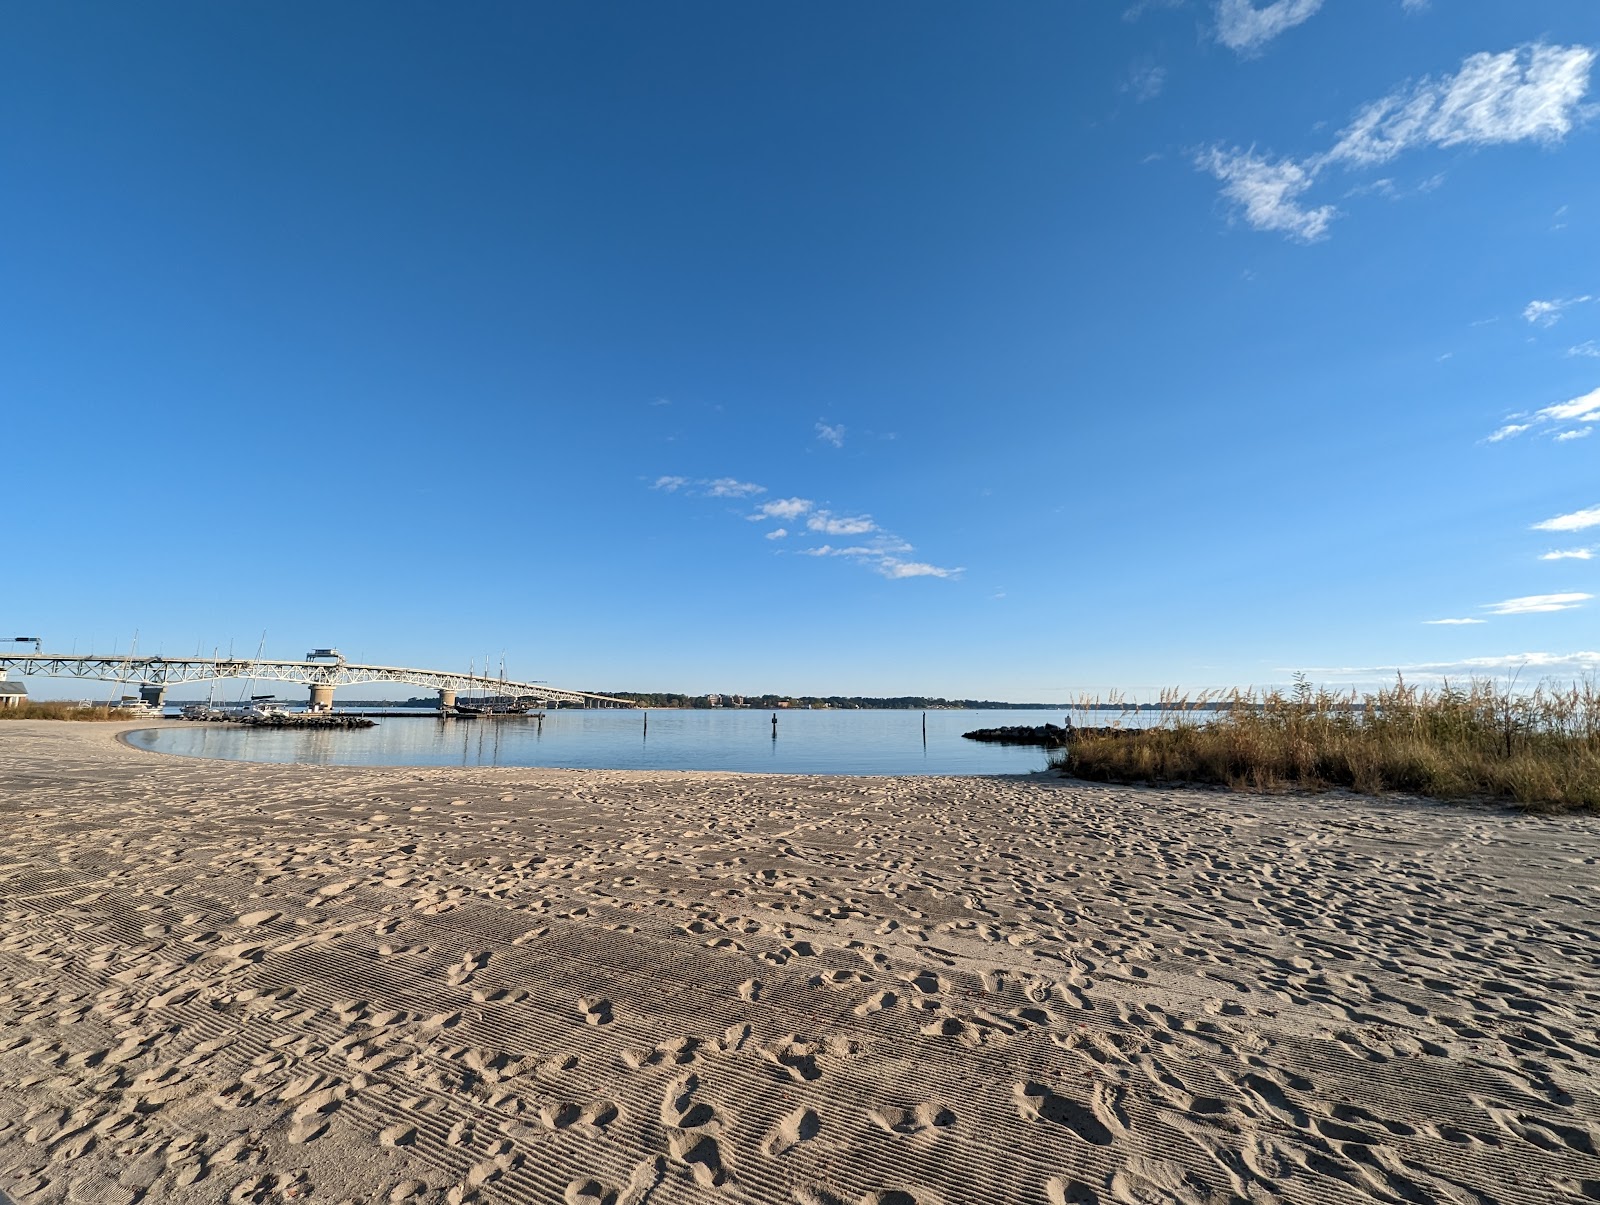 Photo de Yorktown beach - endroit populaire parmi les connaisseurs de la détente